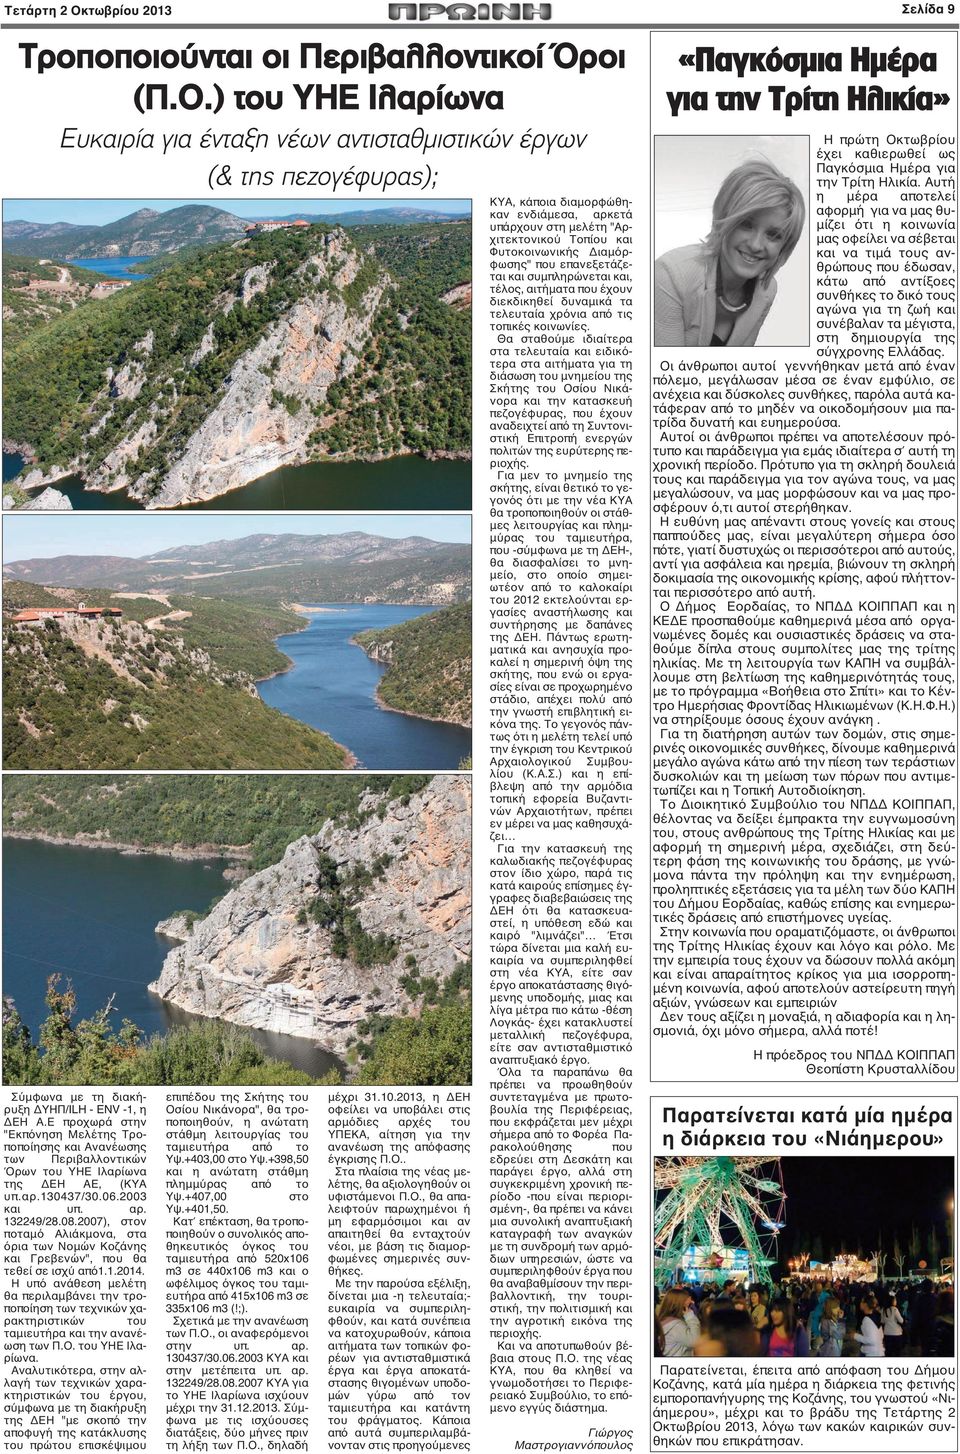 2007), στον ποταμό Αλιάκμονα, στα όρια των Νομών Κοζάνης και Γρεβενών", που θα τεθεί σε ισχύ από1.1.2014.